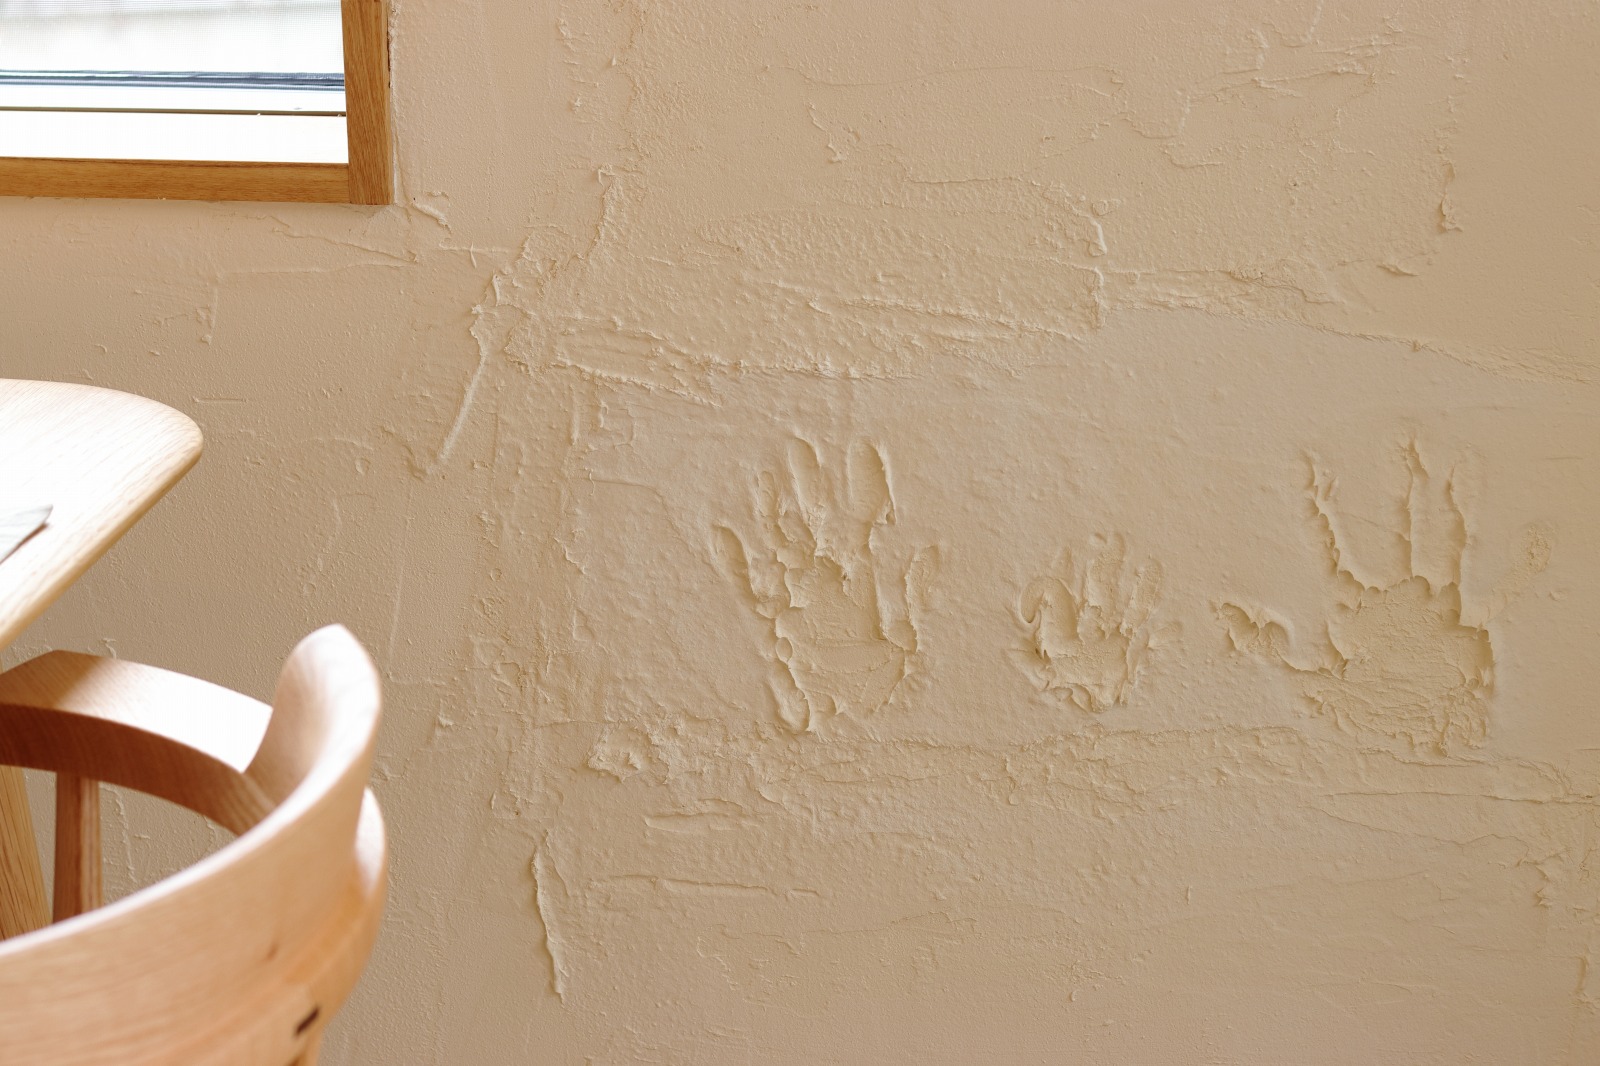 滋賀県大津市の注文住宅の家族の手形を押した漆喰壁